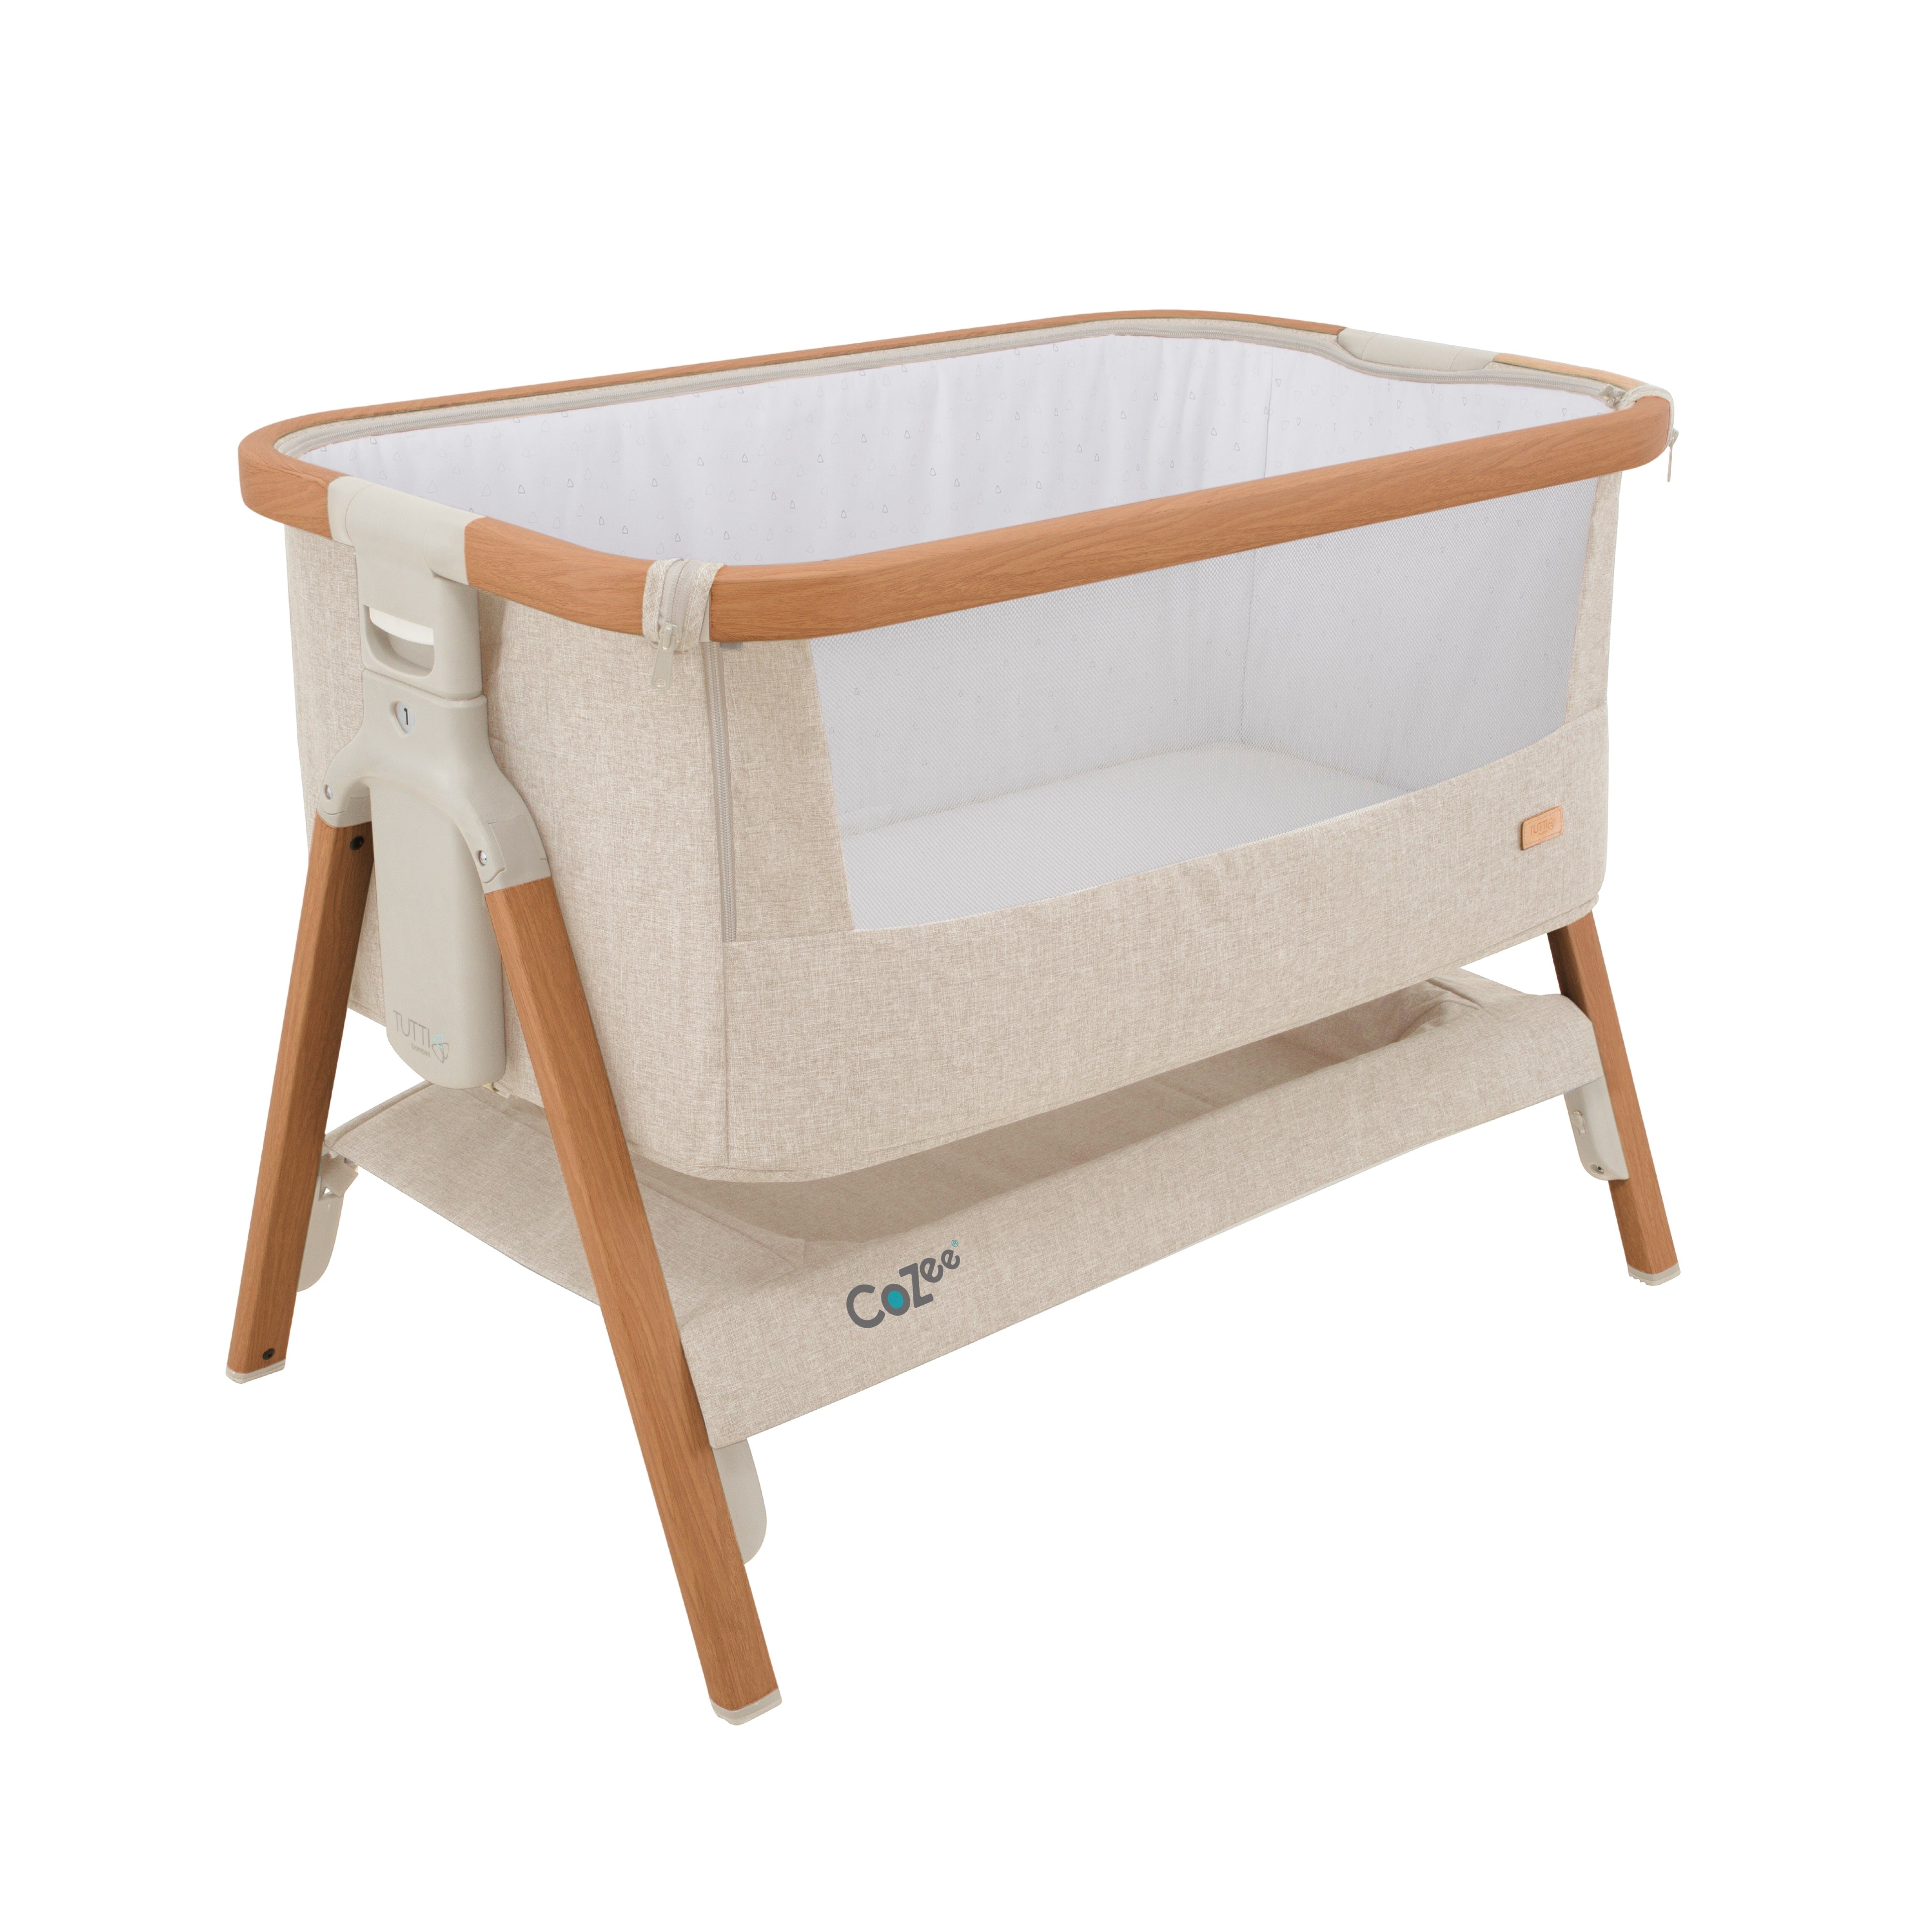 Tutti Bambini Cozee Bedside Crib - Scandinavian Walnut/Ecru - For Your Little One